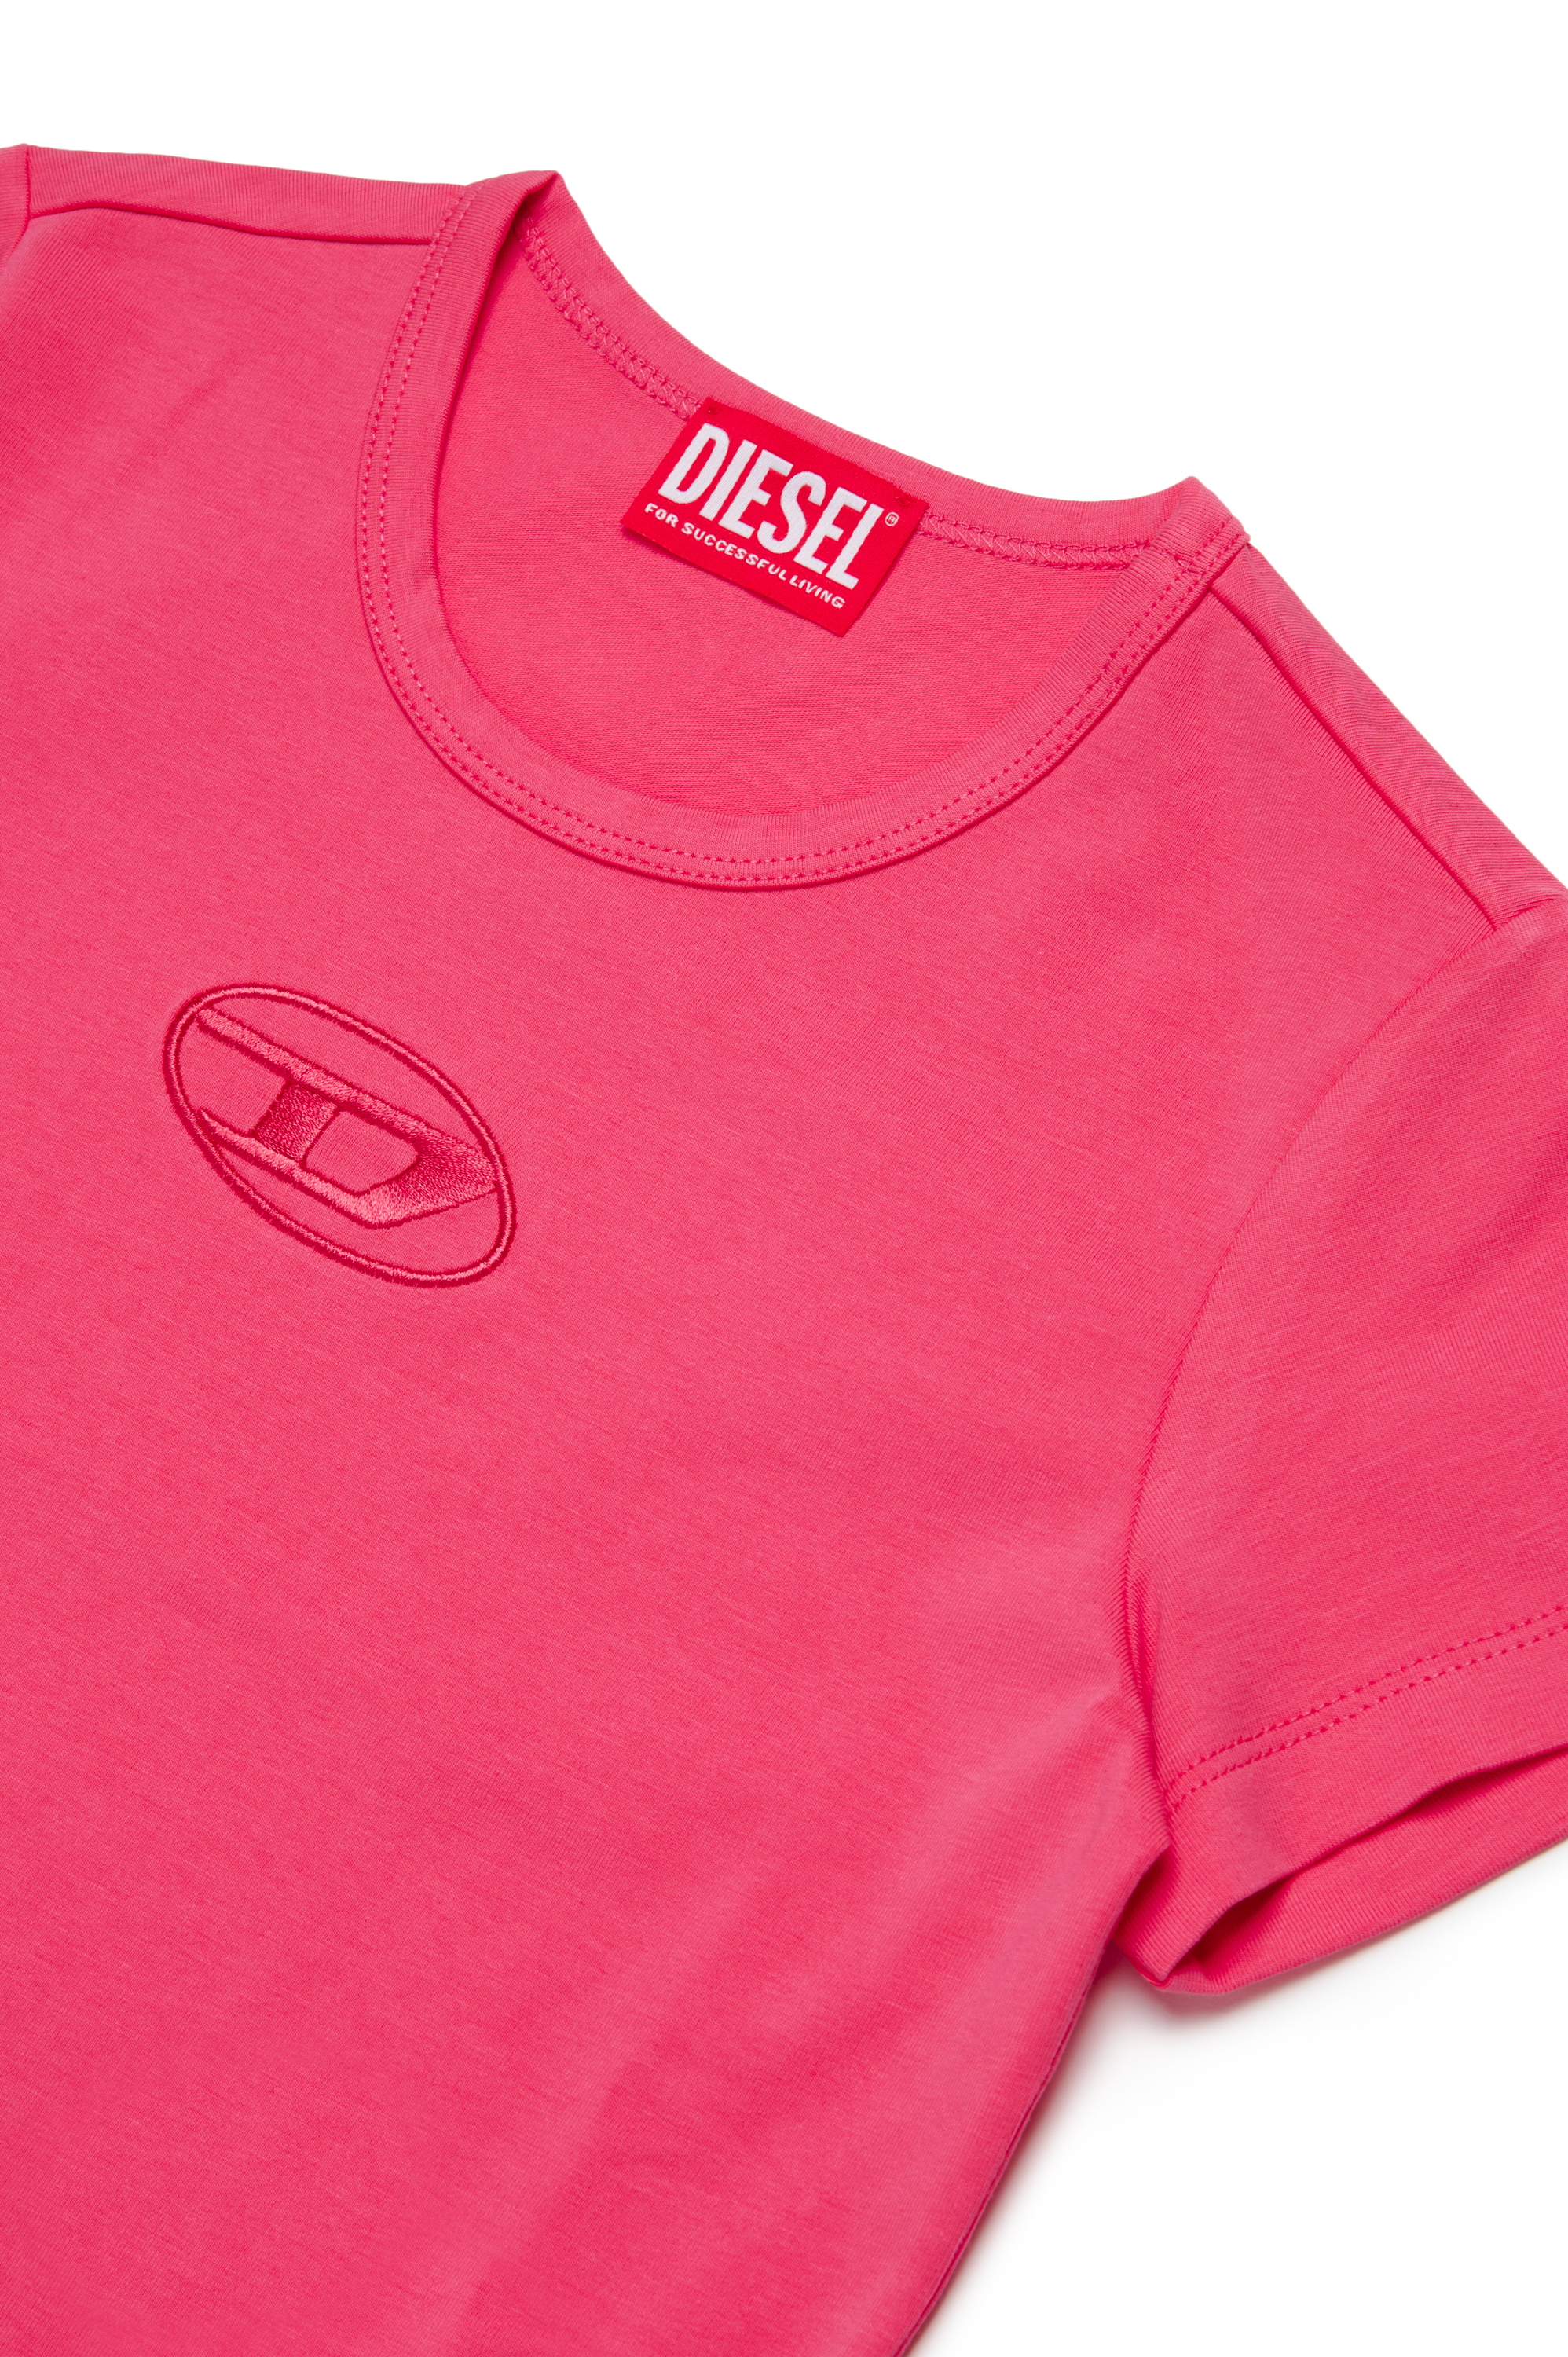 Diesel - TANGIEX, Damen T-Shirt mit farblich abgestimmter Oval D-Stickerei in Rosa - Image 3